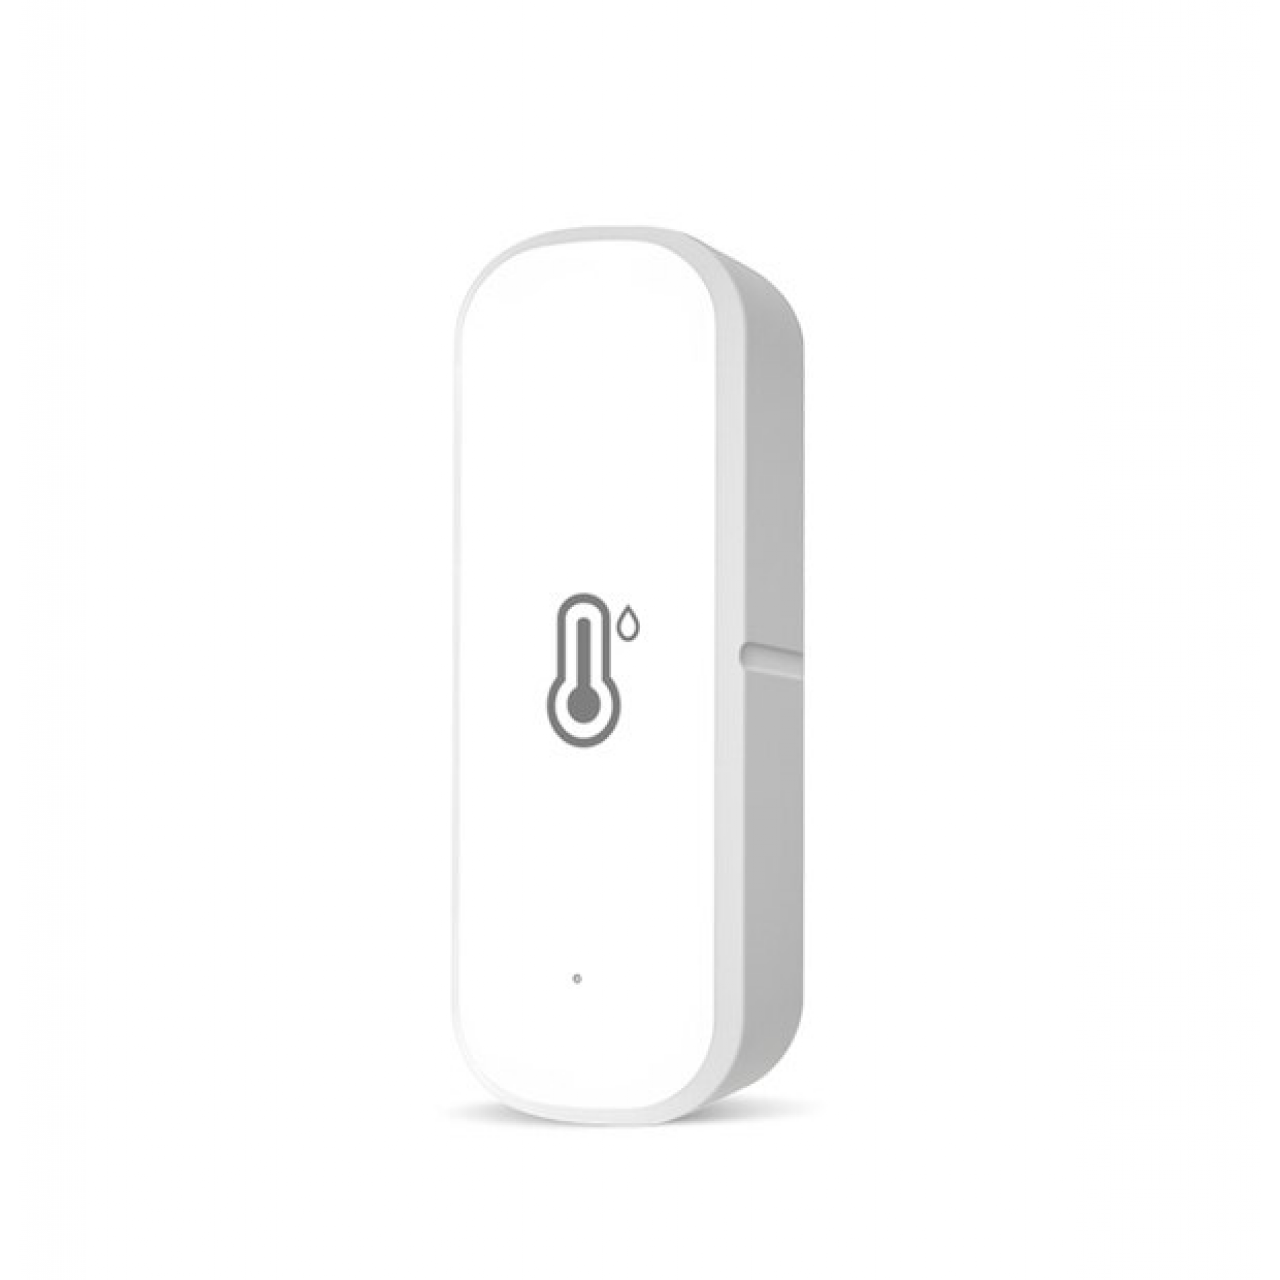 Датчик температуры и влажности Tuya, гигрометр с Wi-Fi, термометром и сигнализацией для умного дома, с поддержкой Alexa и Google Assistant